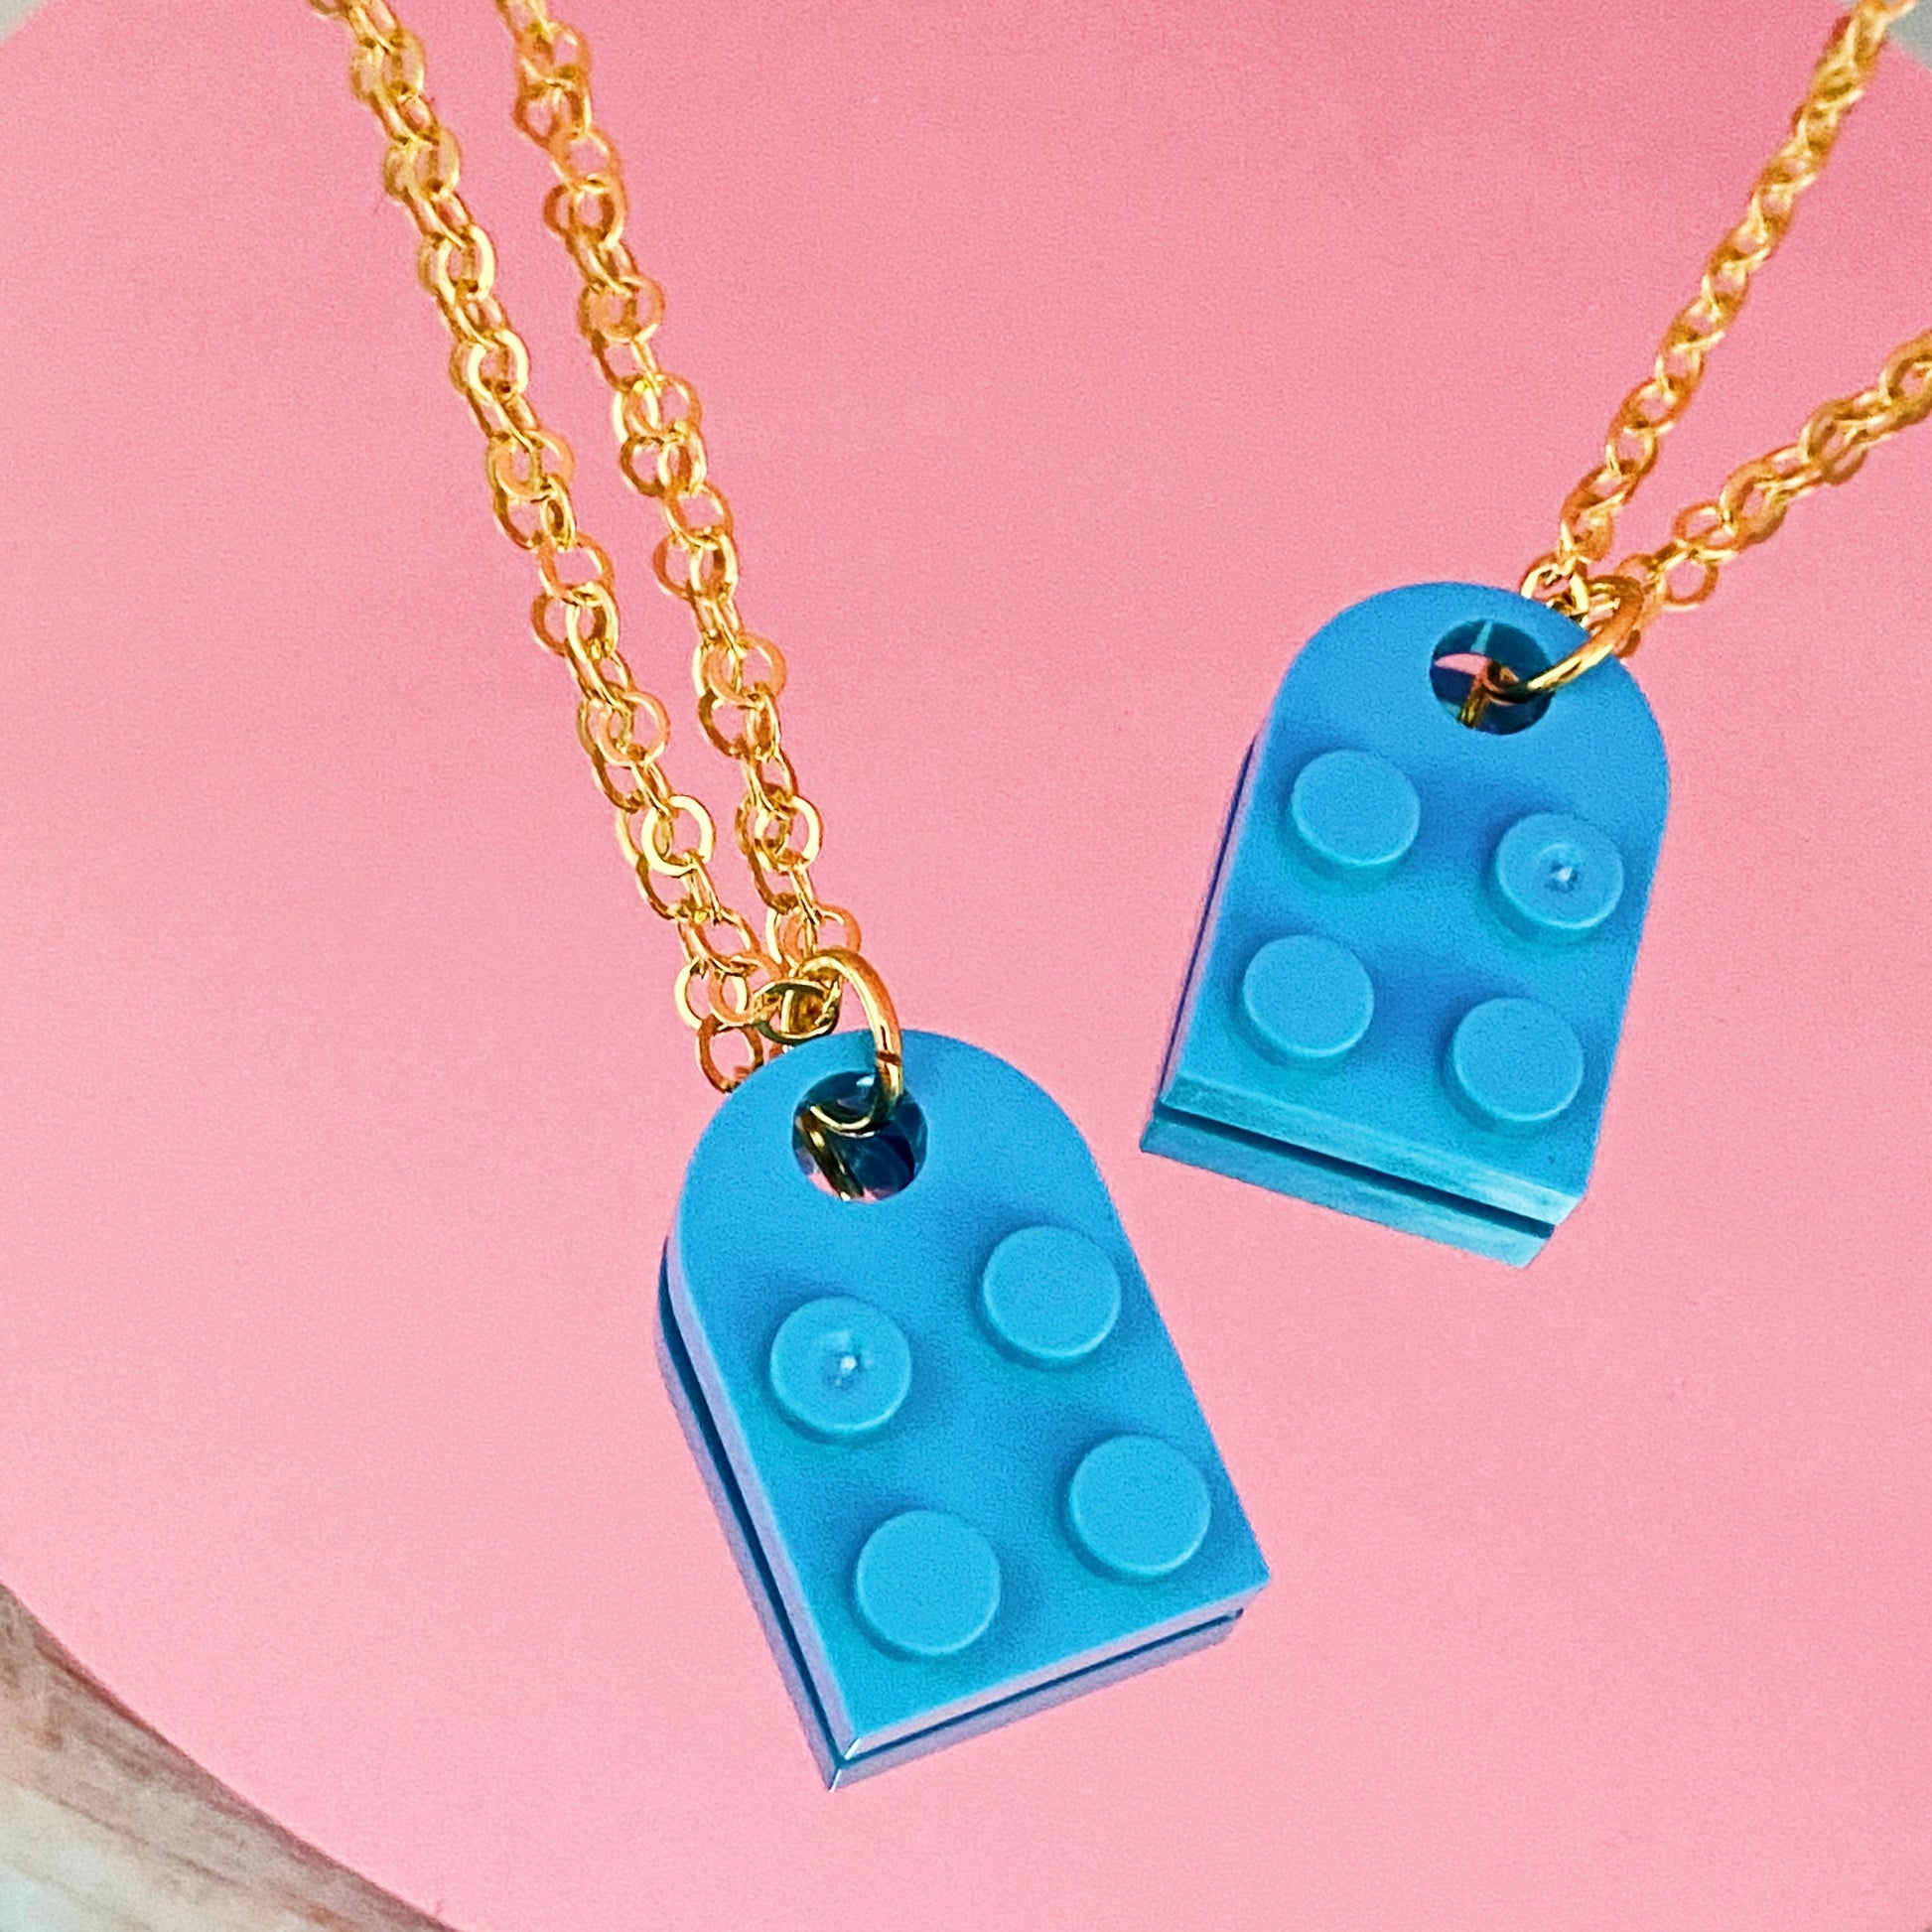 Best Friends Blue Lego Necklaces - ROCKmint